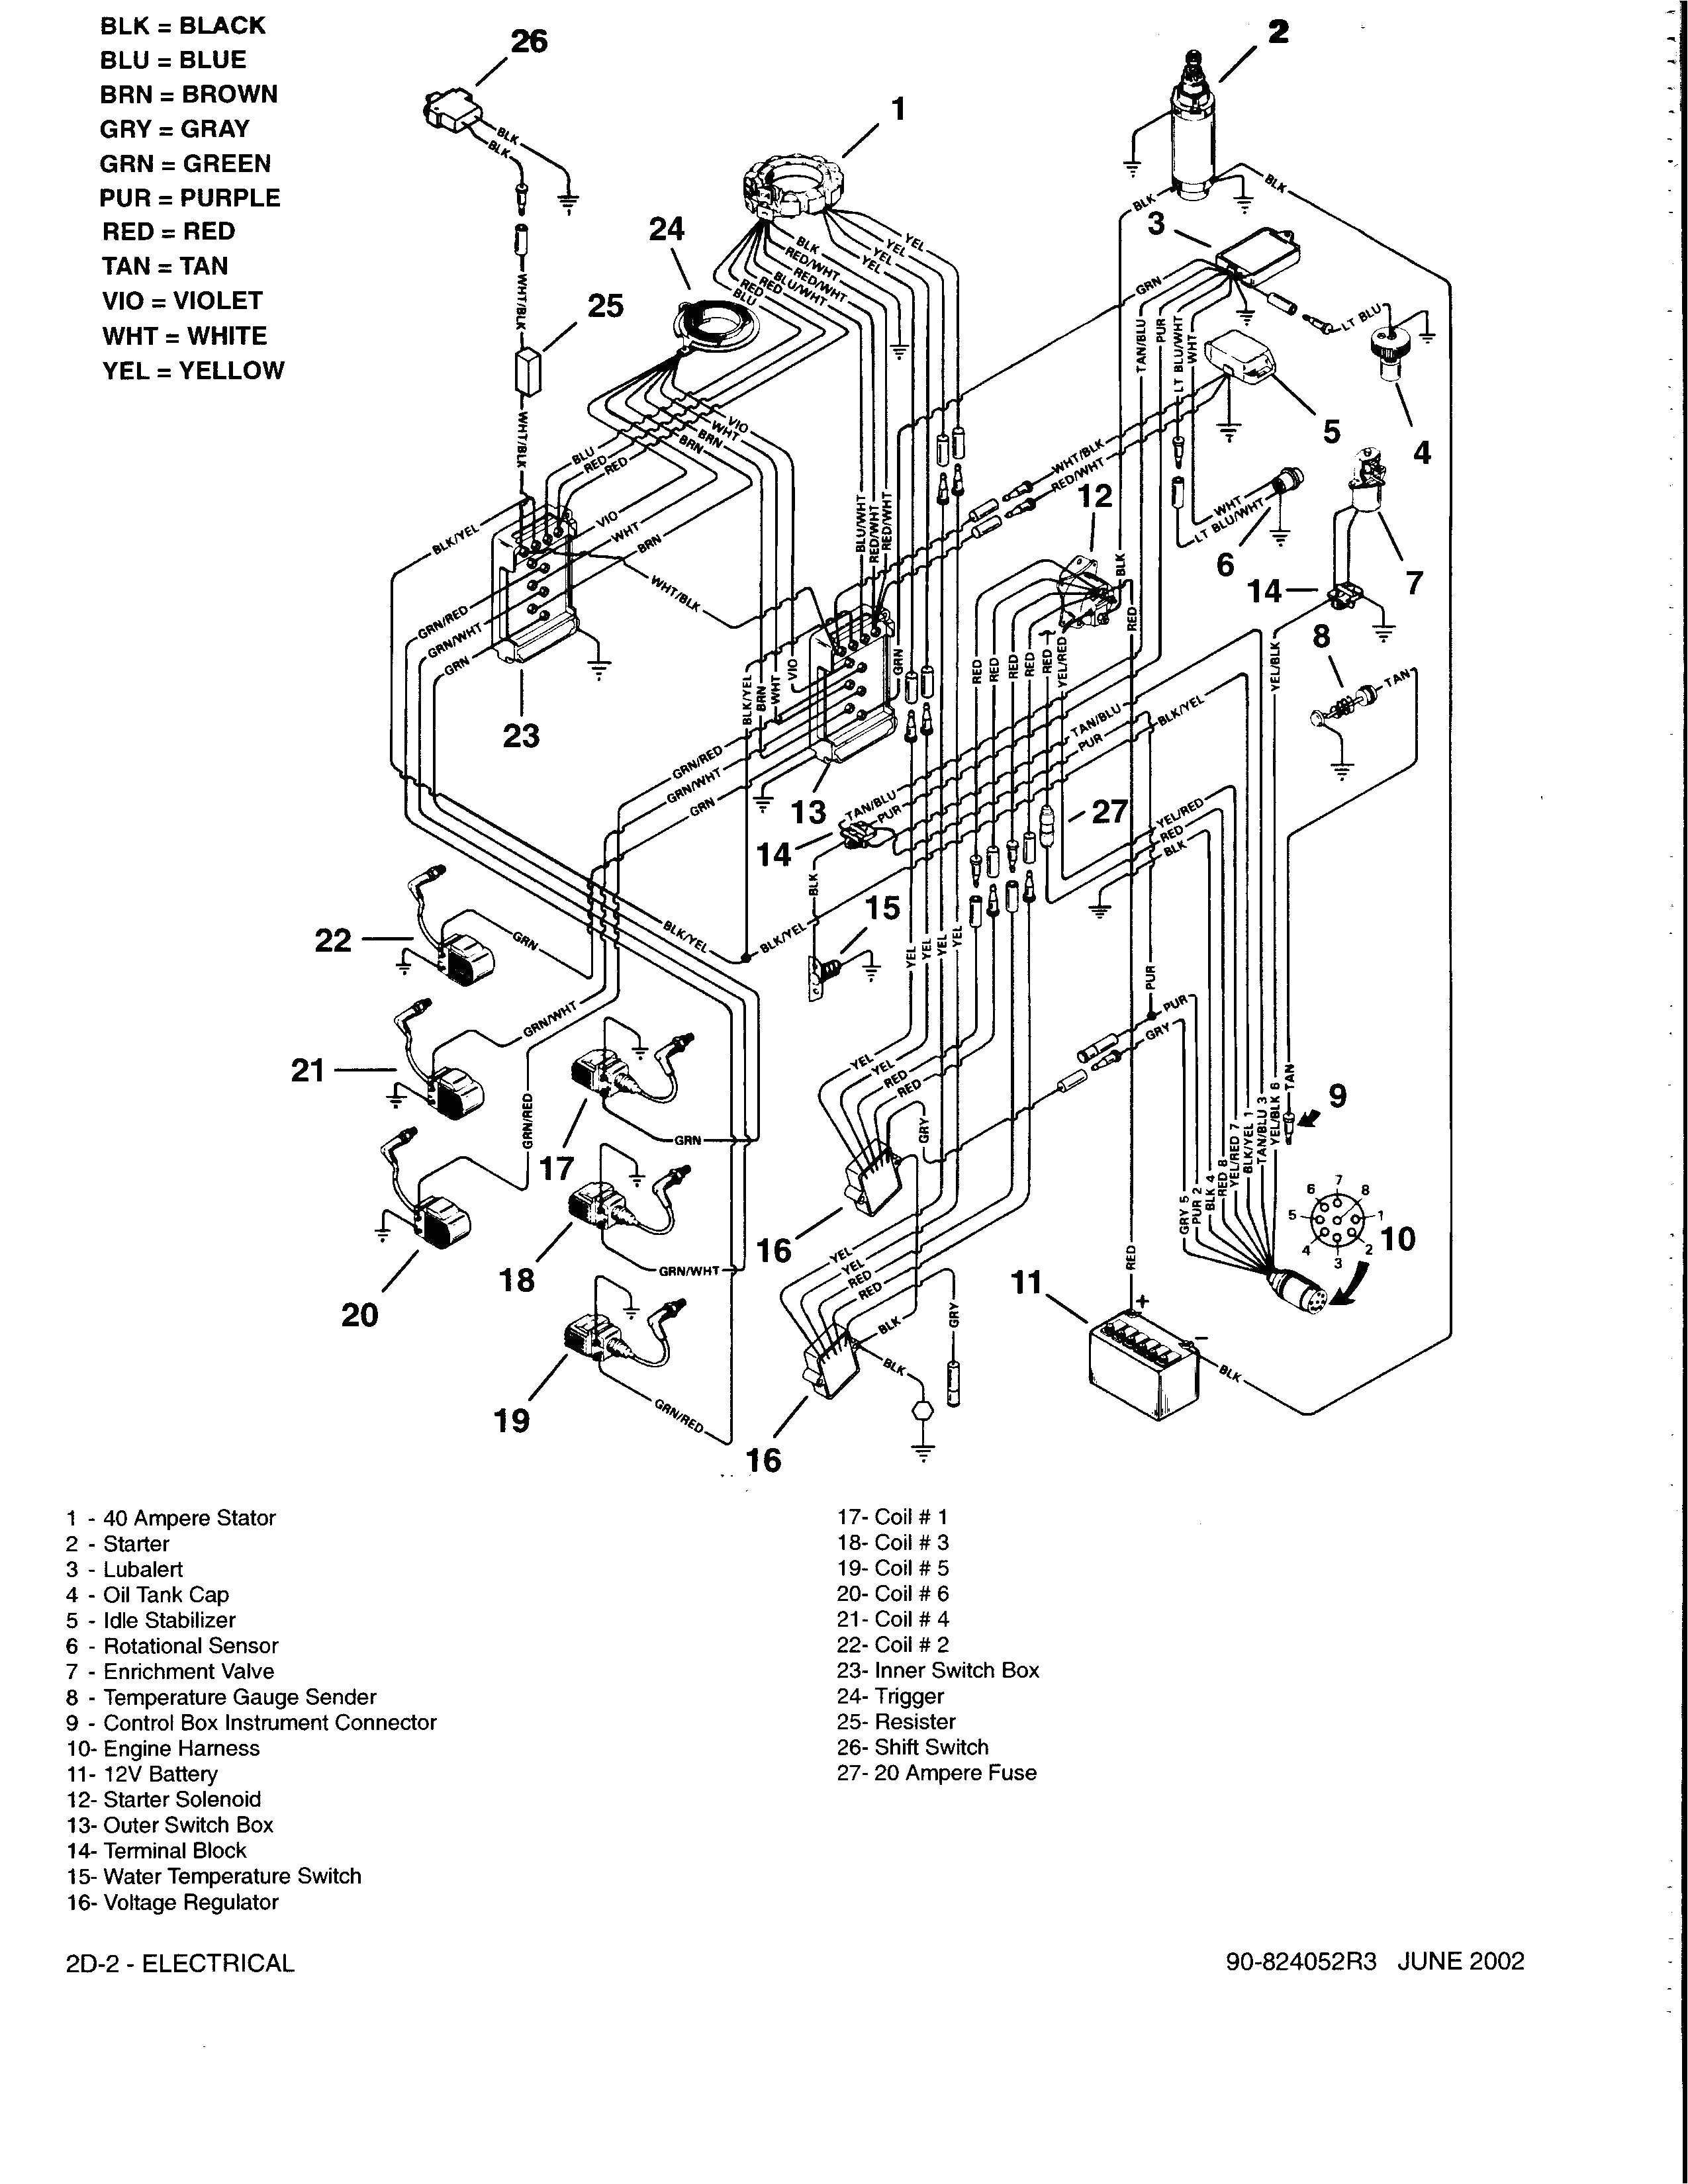 1845c wiring diagram back up alarm wiring diagram paper 1845c wiring diagram back up alarm